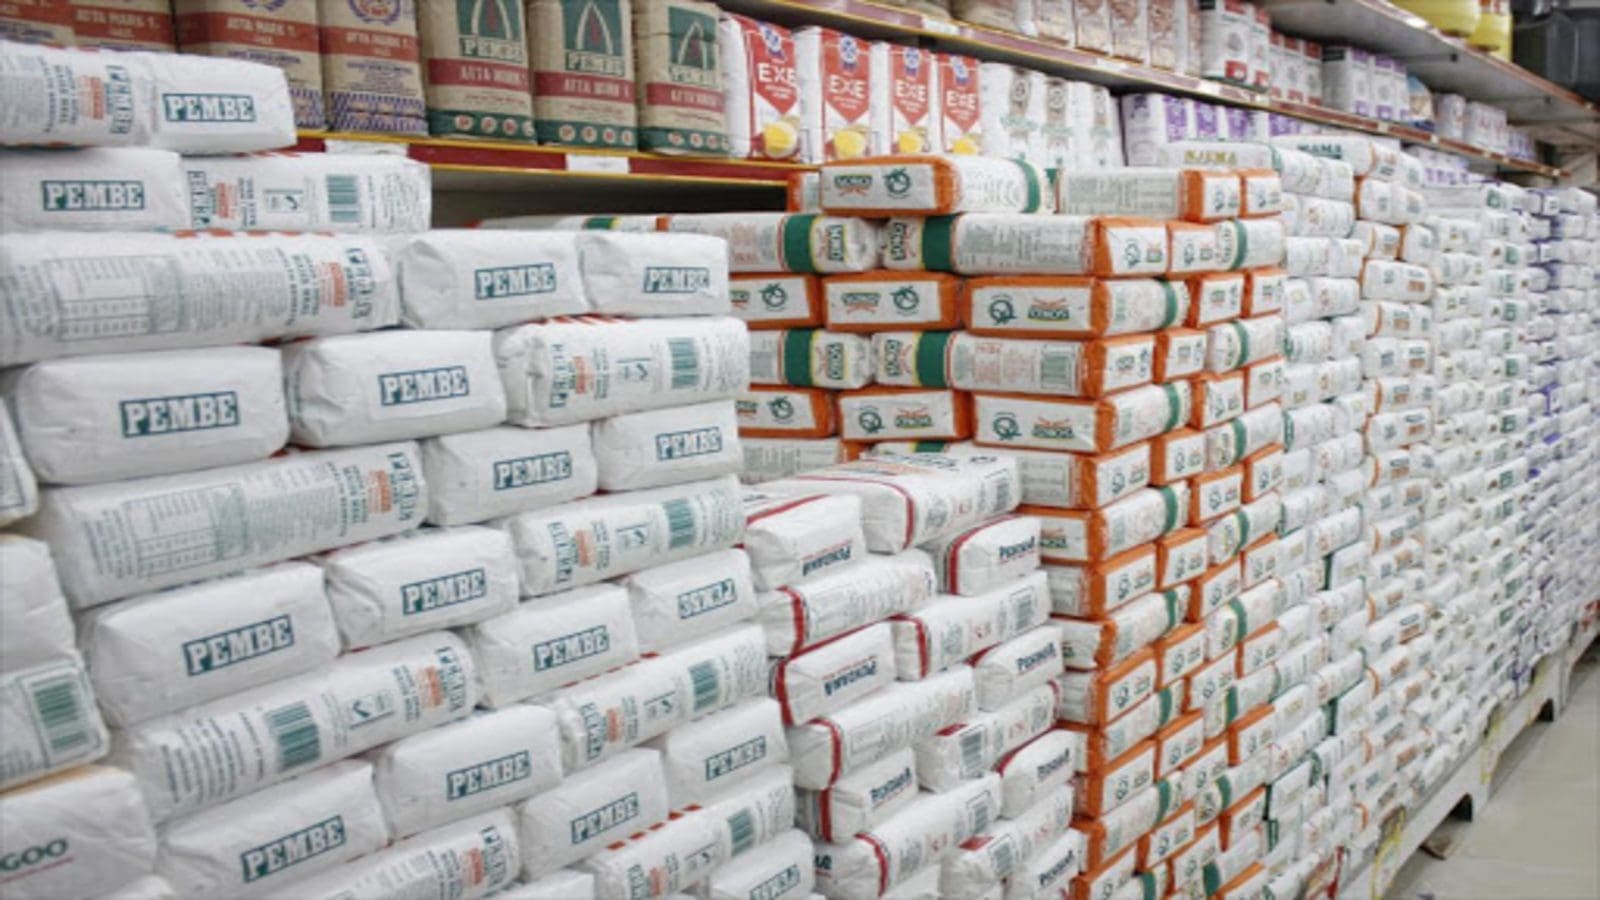 Maize meal prices in Kenya dip 6.5% in November as harvesting intensifies: KNBS